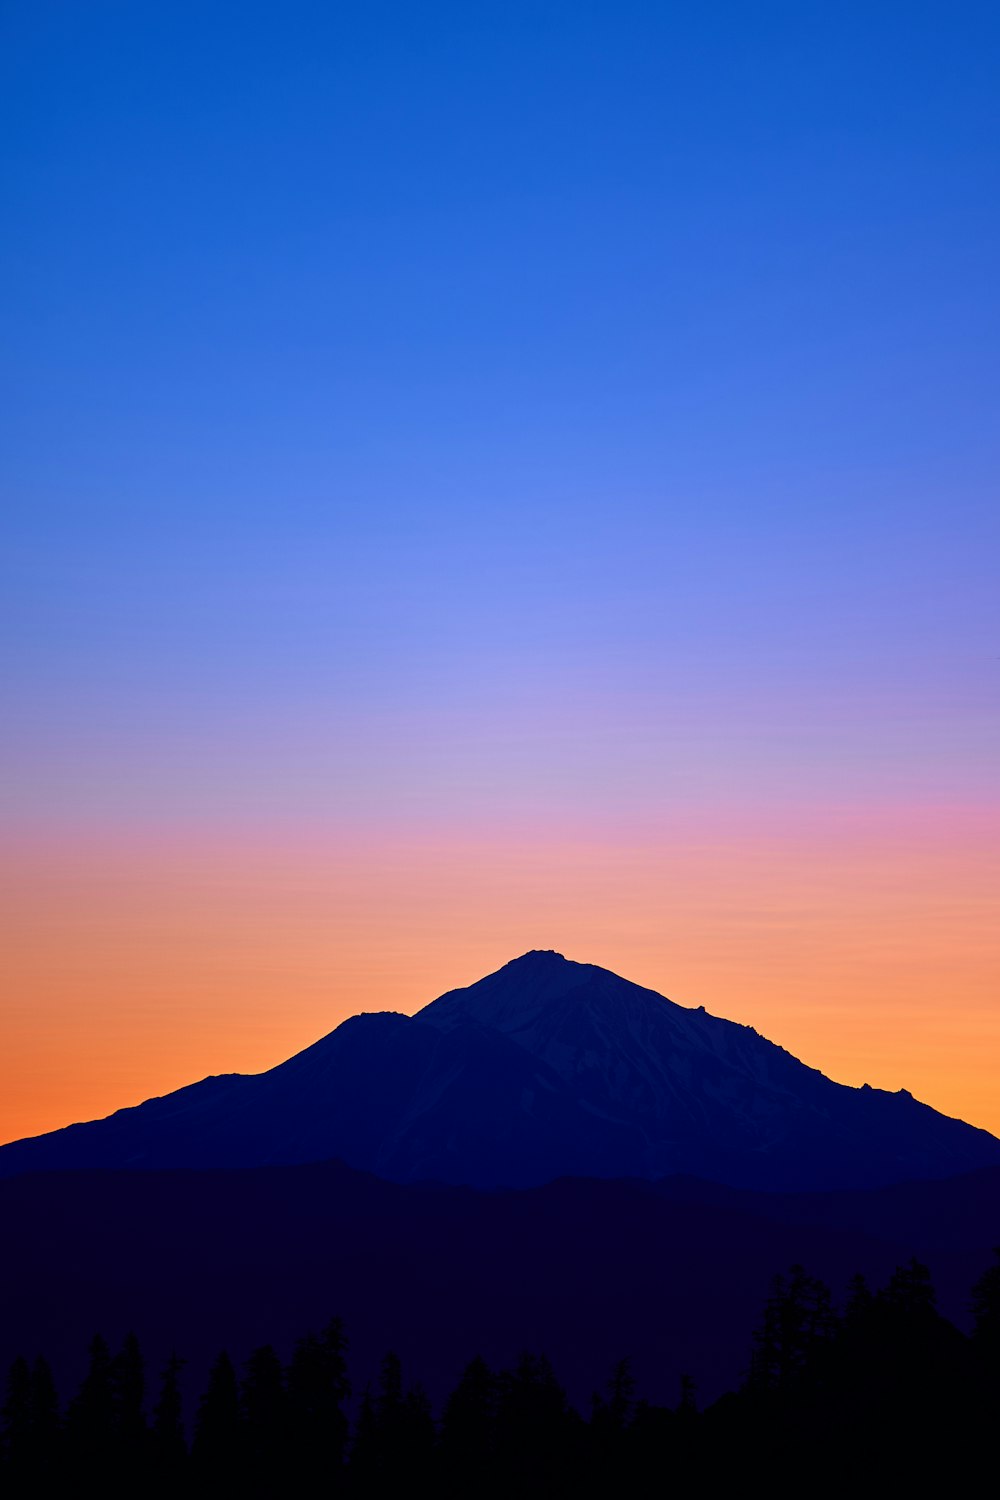 Montaña del cono bajo el cielo naranja y azul